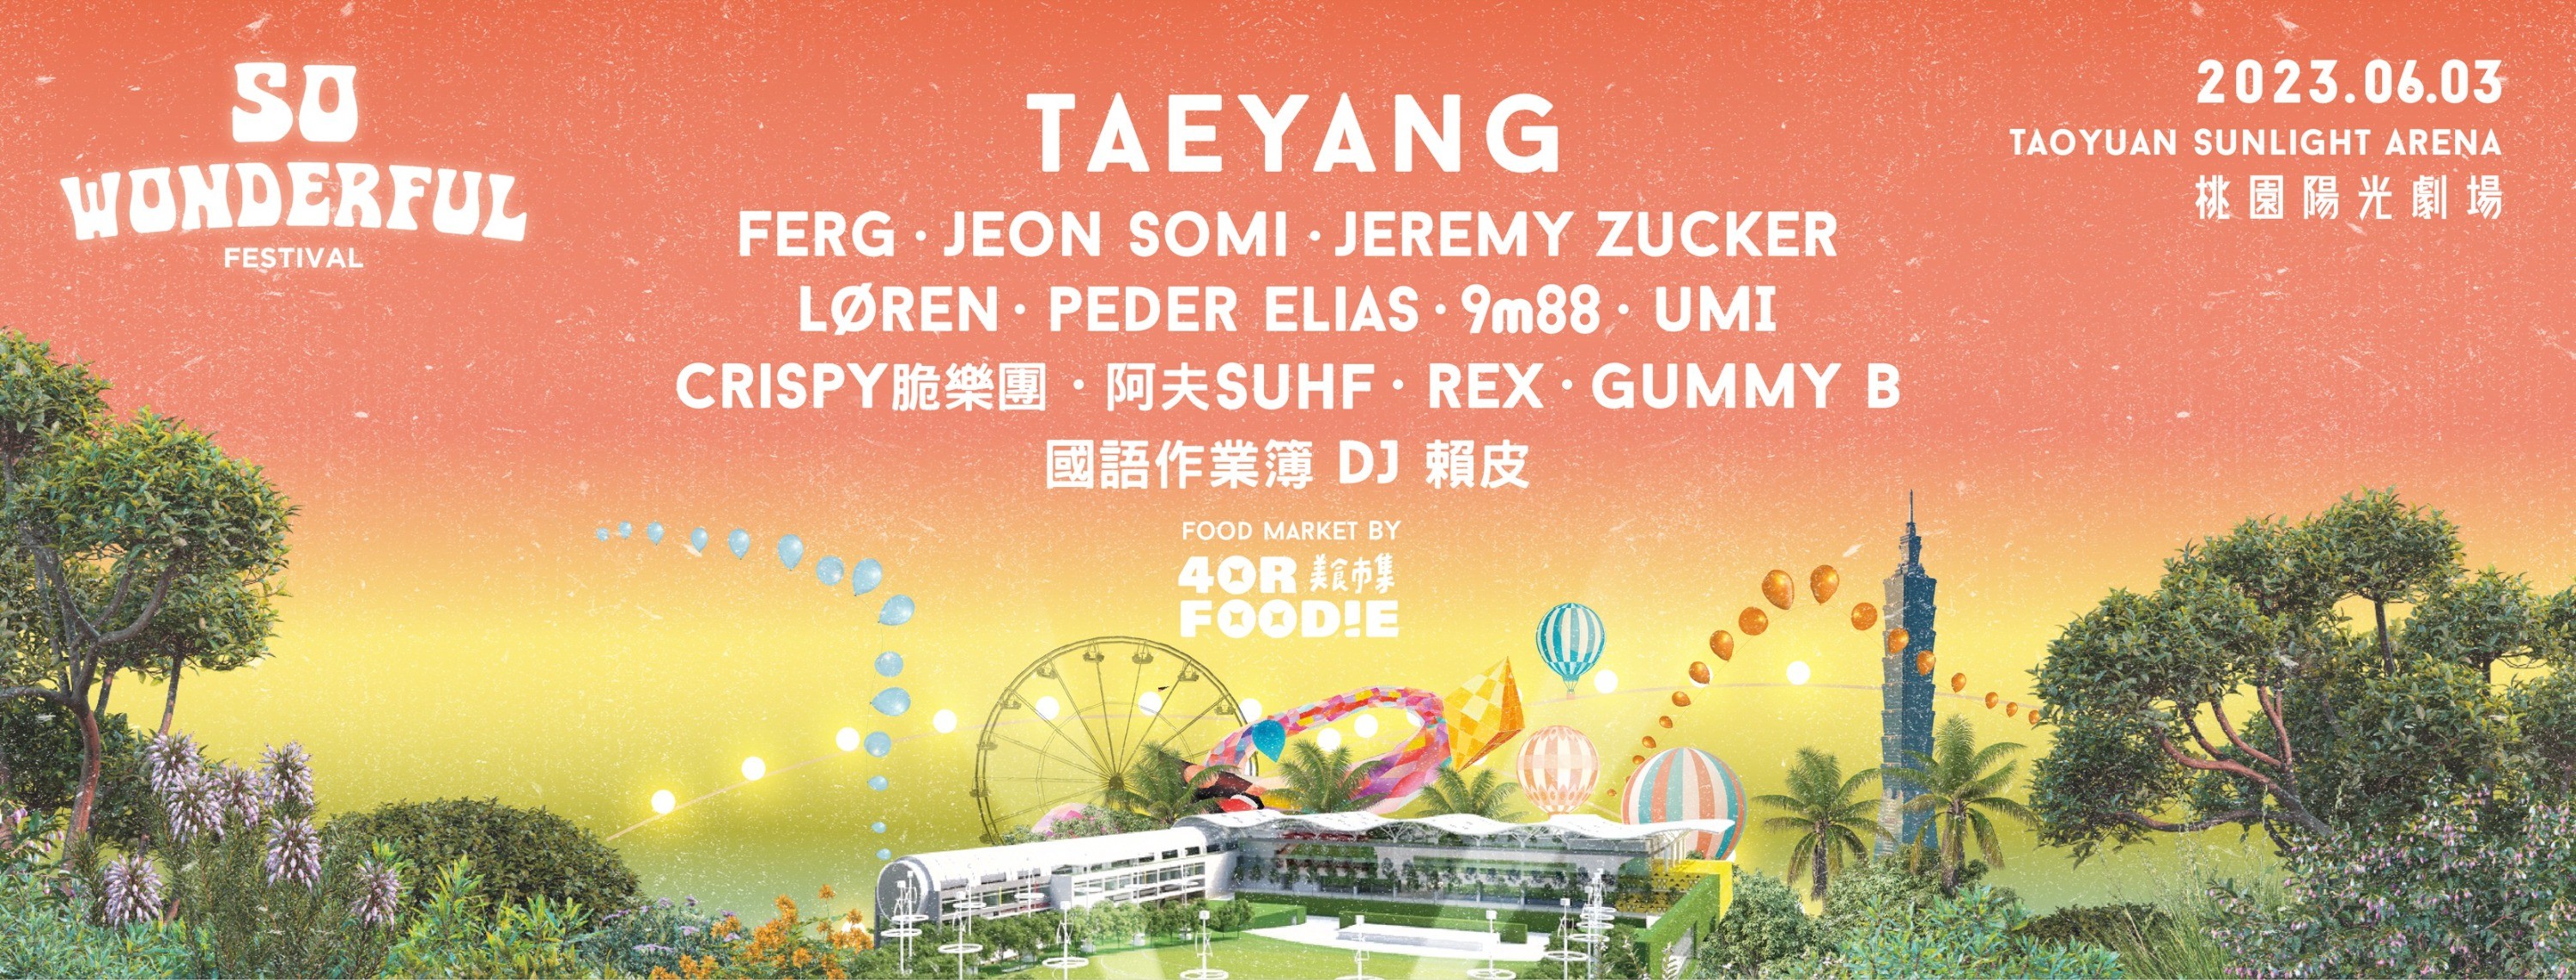 Taeyang Cùng Những Tên Tuổi Hàng Đầu Quy Tụ Về Đài Loan Cho Sự Kiện So Wonderful Outdoor Festival